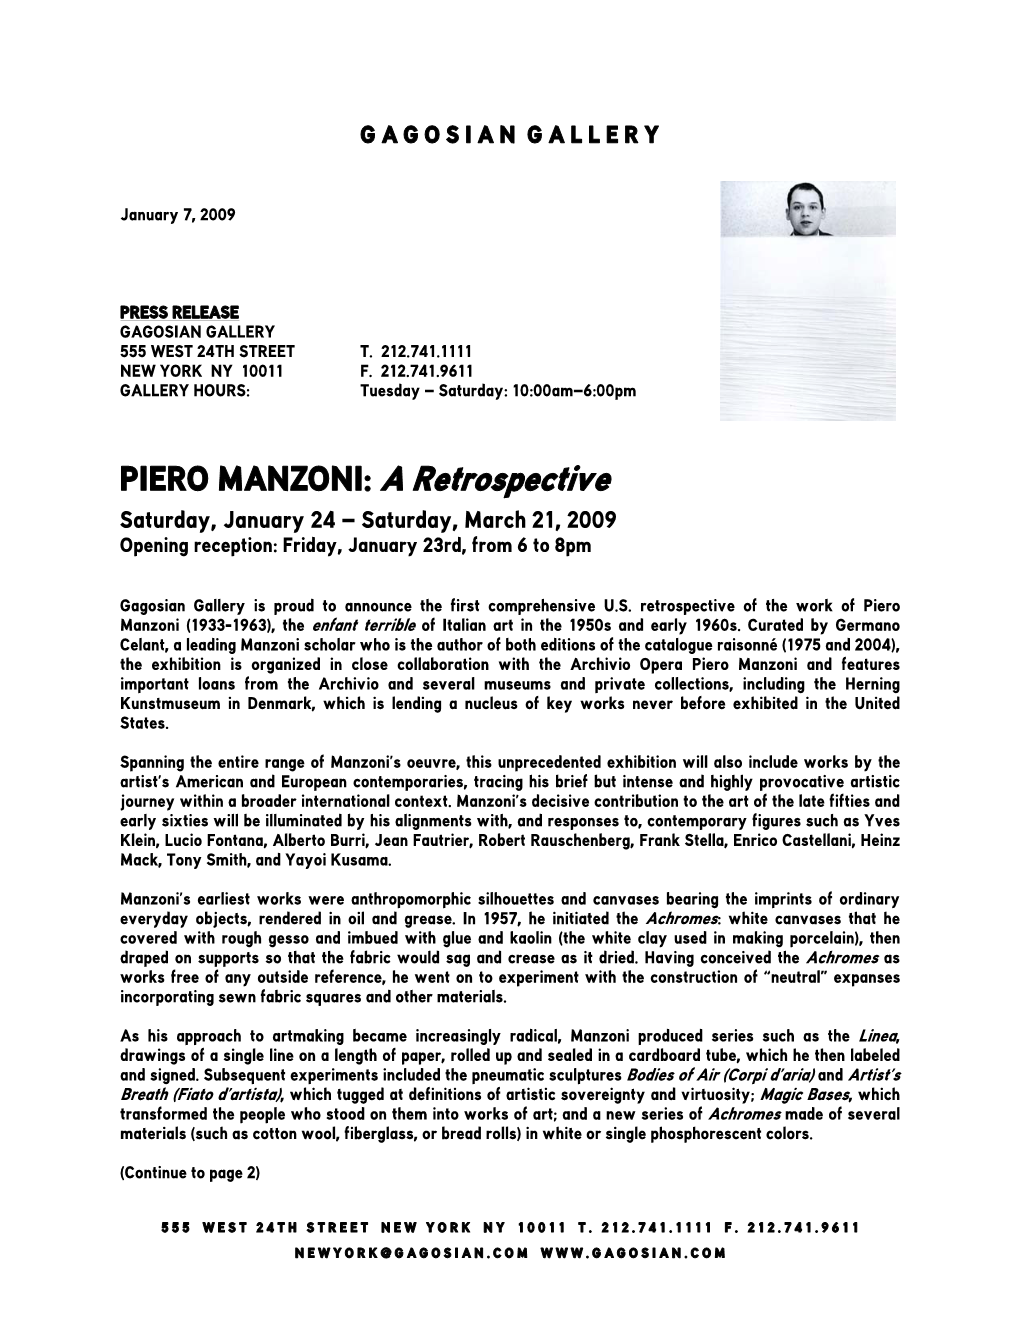 PIERO MANZONI: a Retrospective